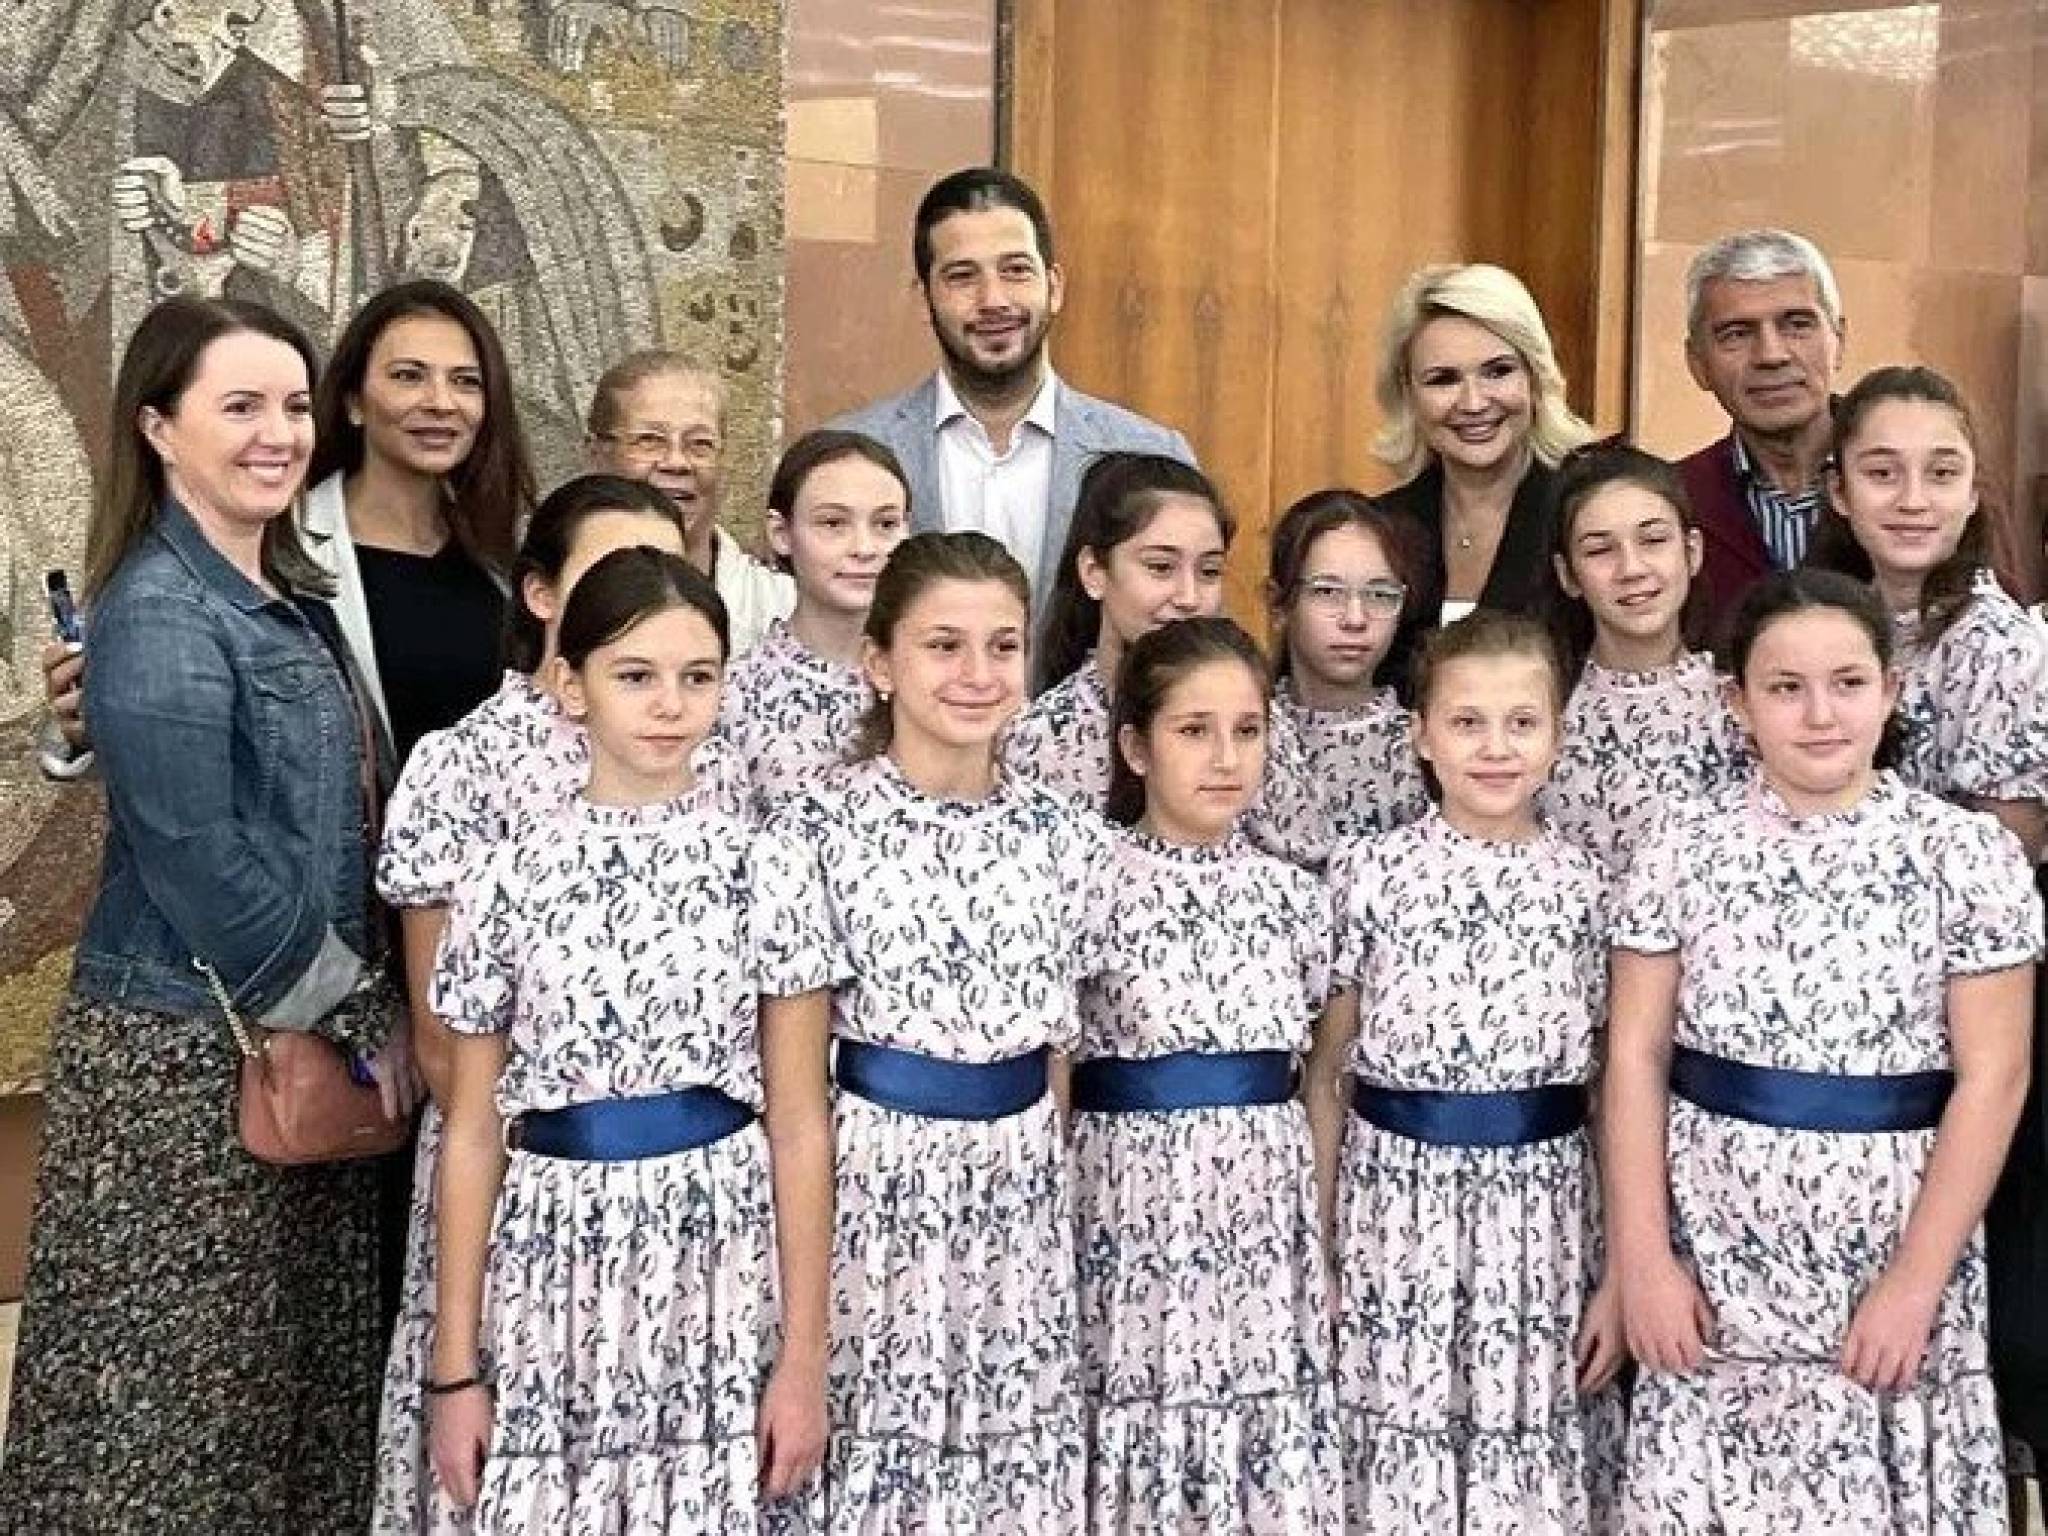 Ministar Udovičić sa decom iz Evrope - Beograd će narednih dana biti prestonica radosti i druženja (FOTO)